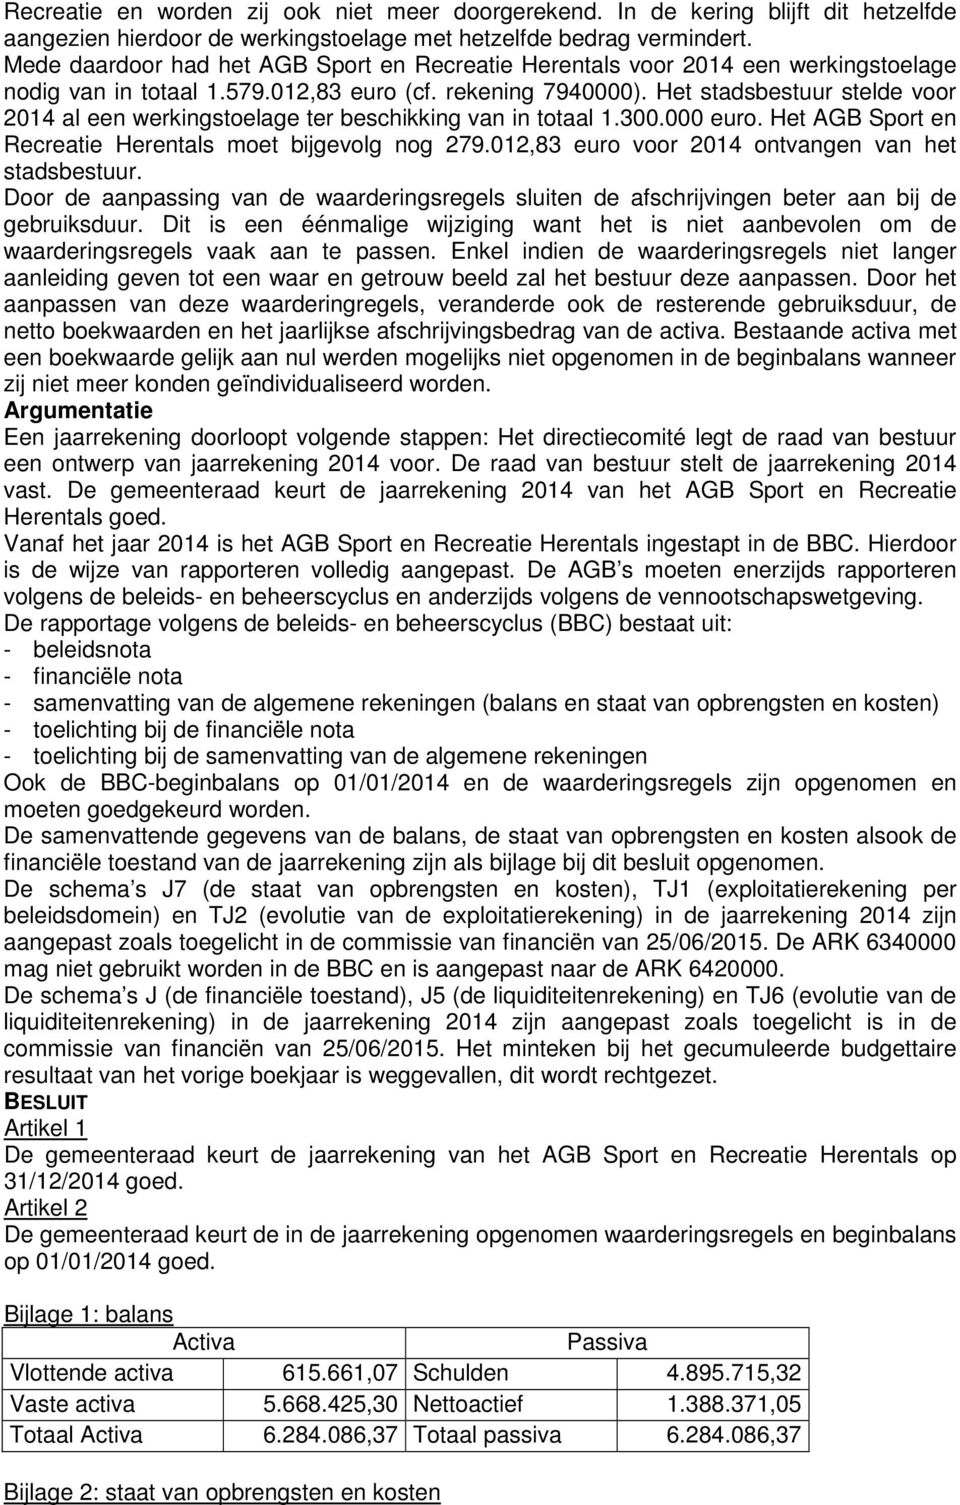 Het stadsbestuur stelde voor 2014 al een werkingstoelage ter beschikking van in totaal 1.300.000 euro. Het AGB Sport en Recreatie Herentals moet bijgevolg nog 279.